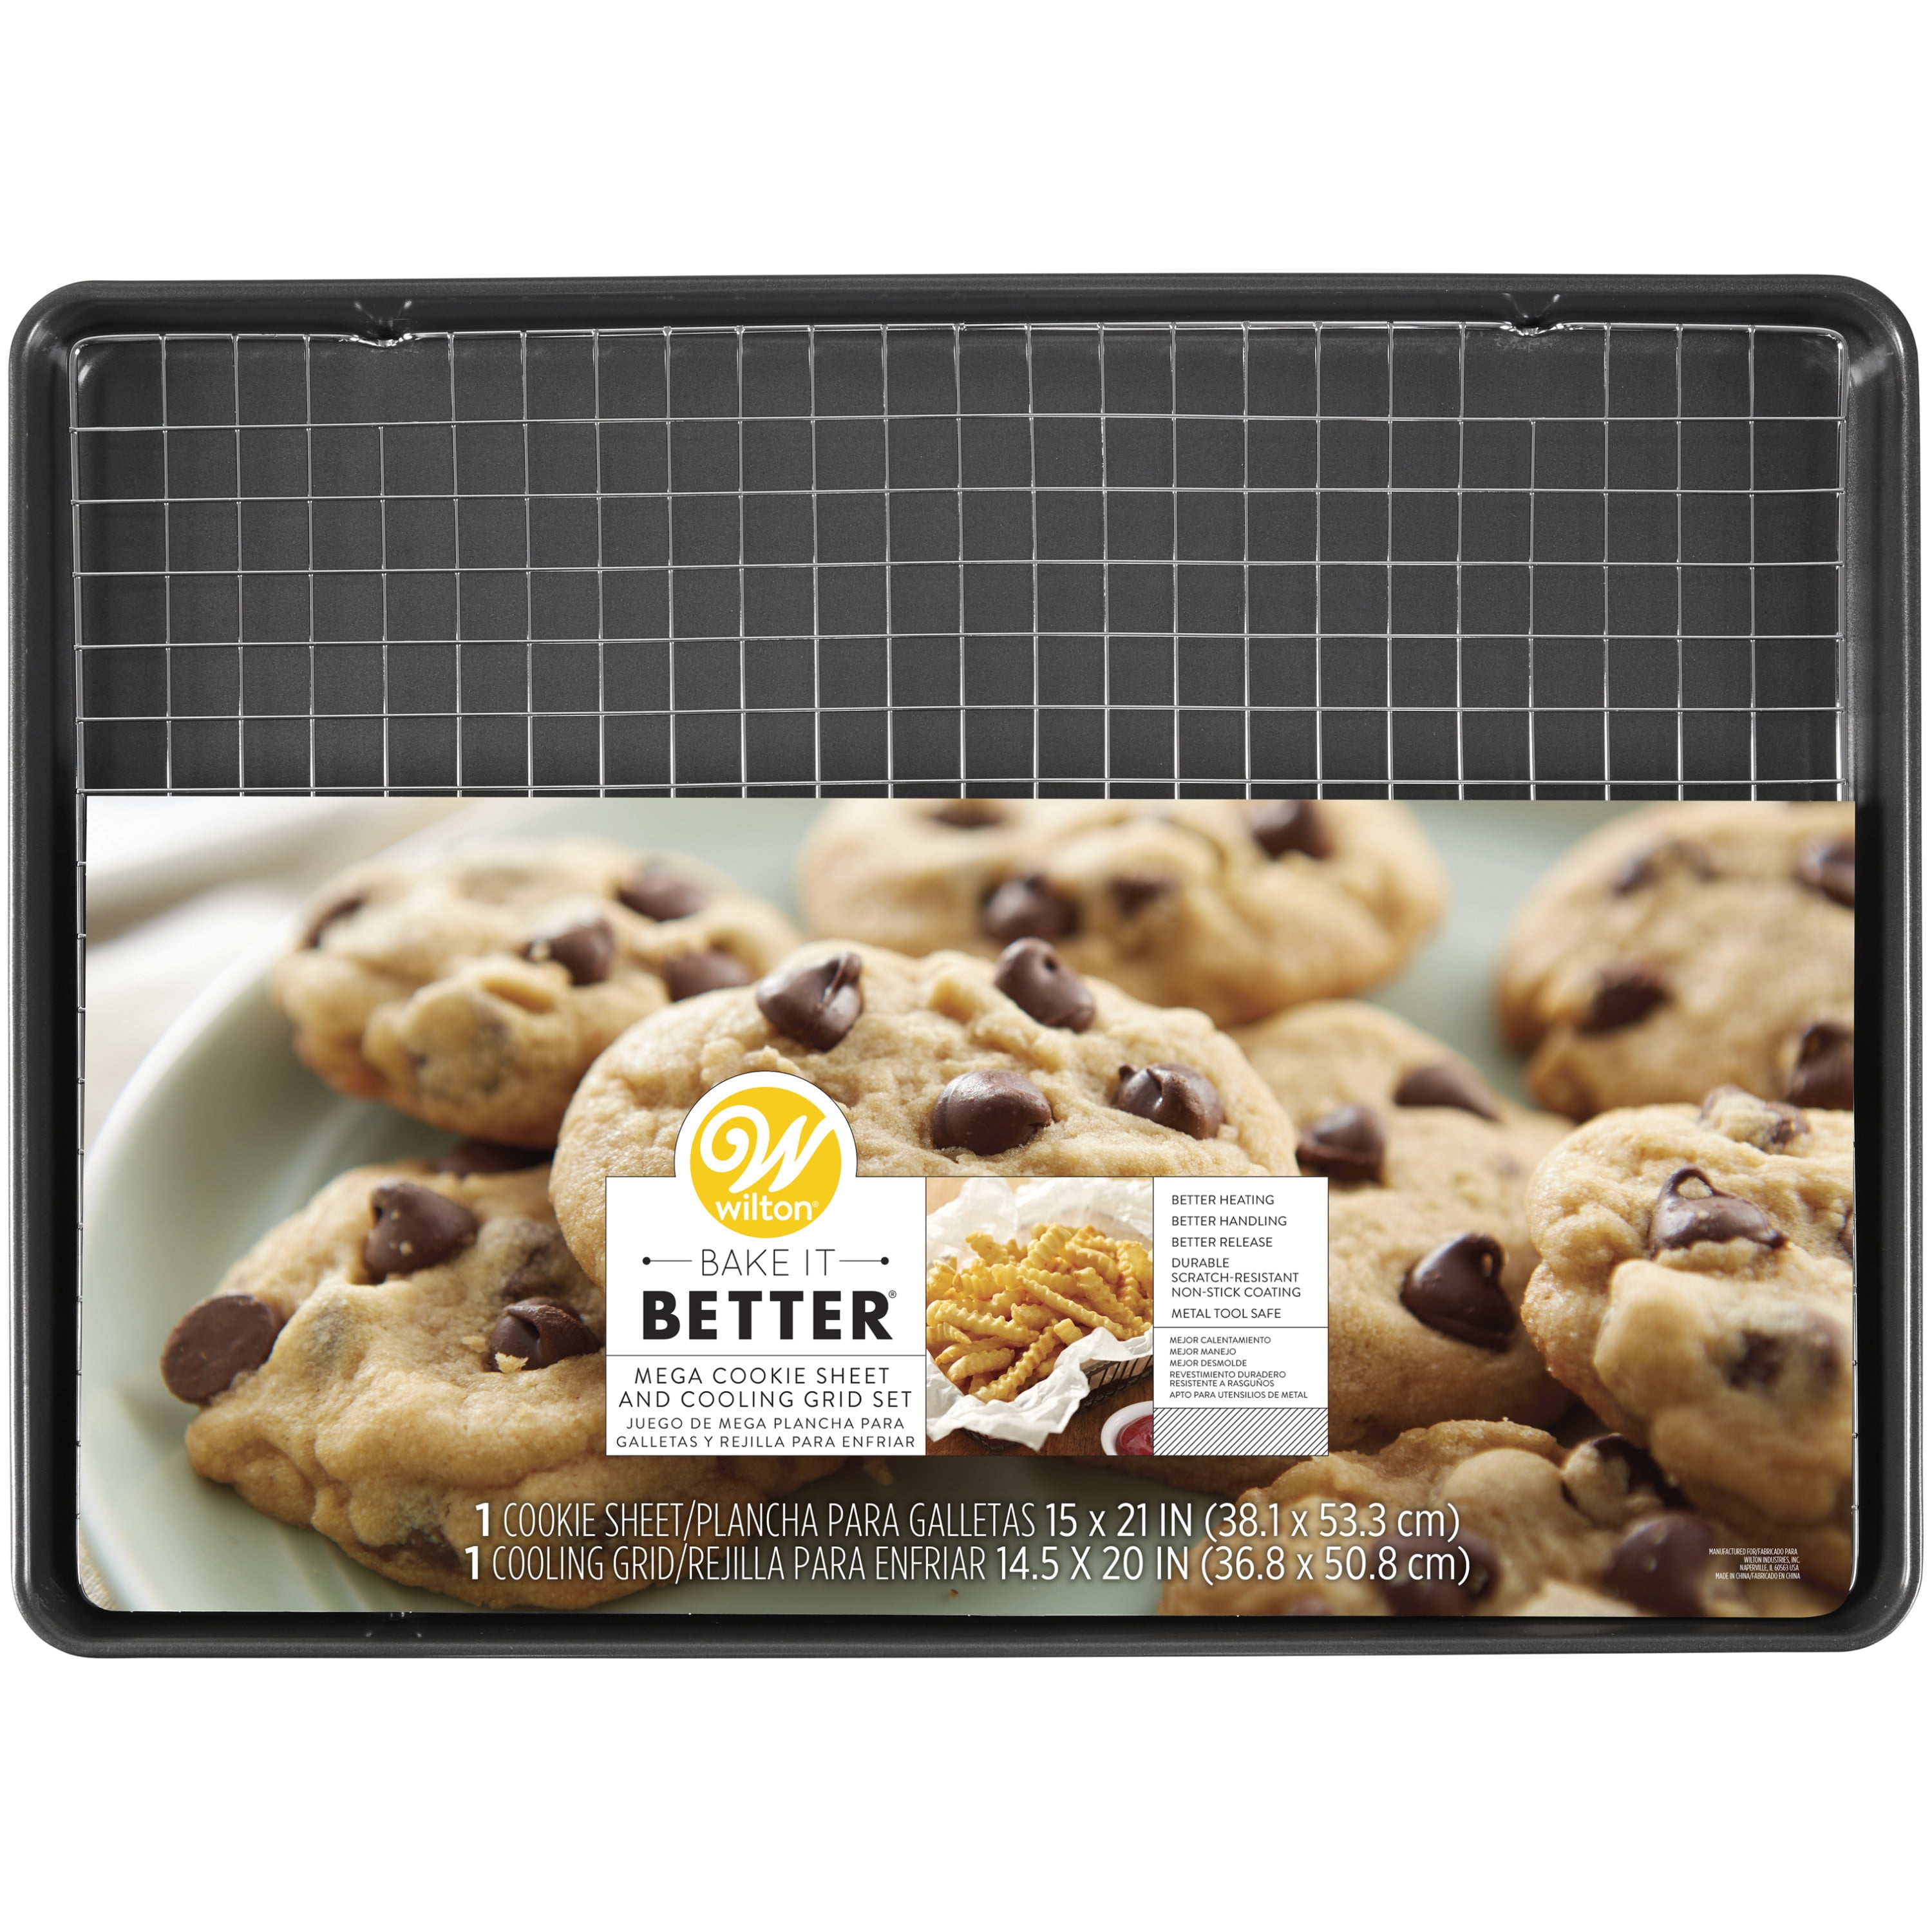 SouthernSavers.com - A baking essential! Get Wilton 15”x21” Mega